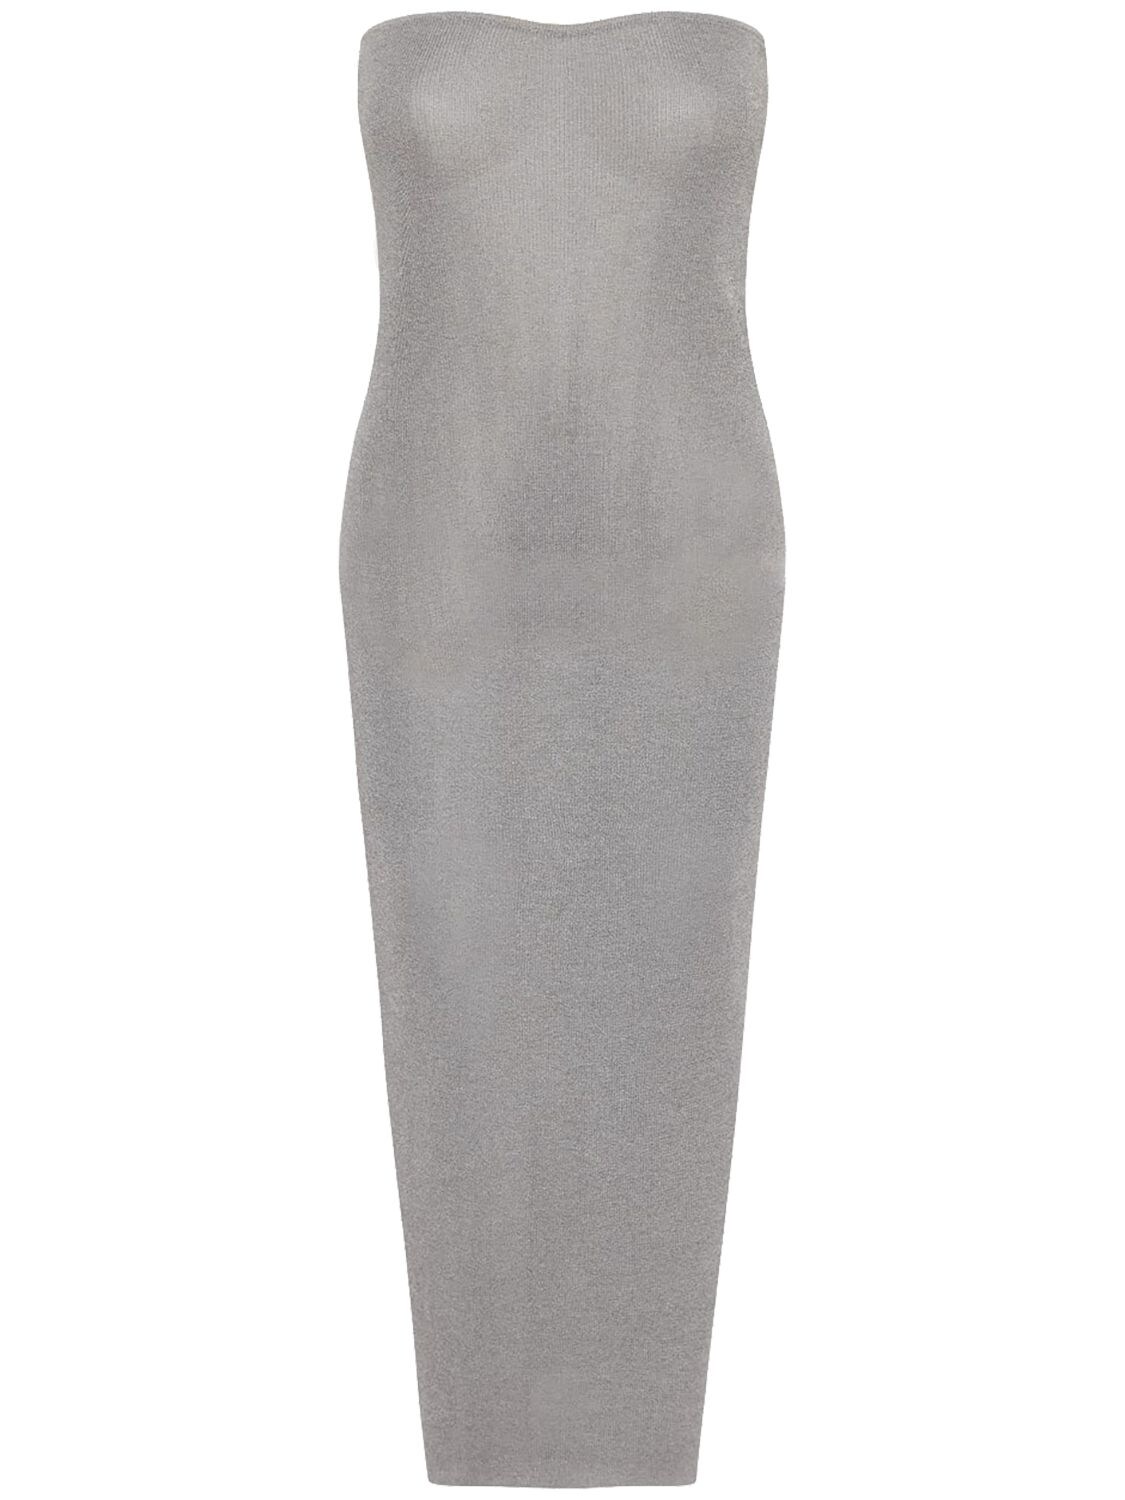 90s Strapless Sheer Knit Midi Dress – WOMEN > CLOTHING > DRESSES